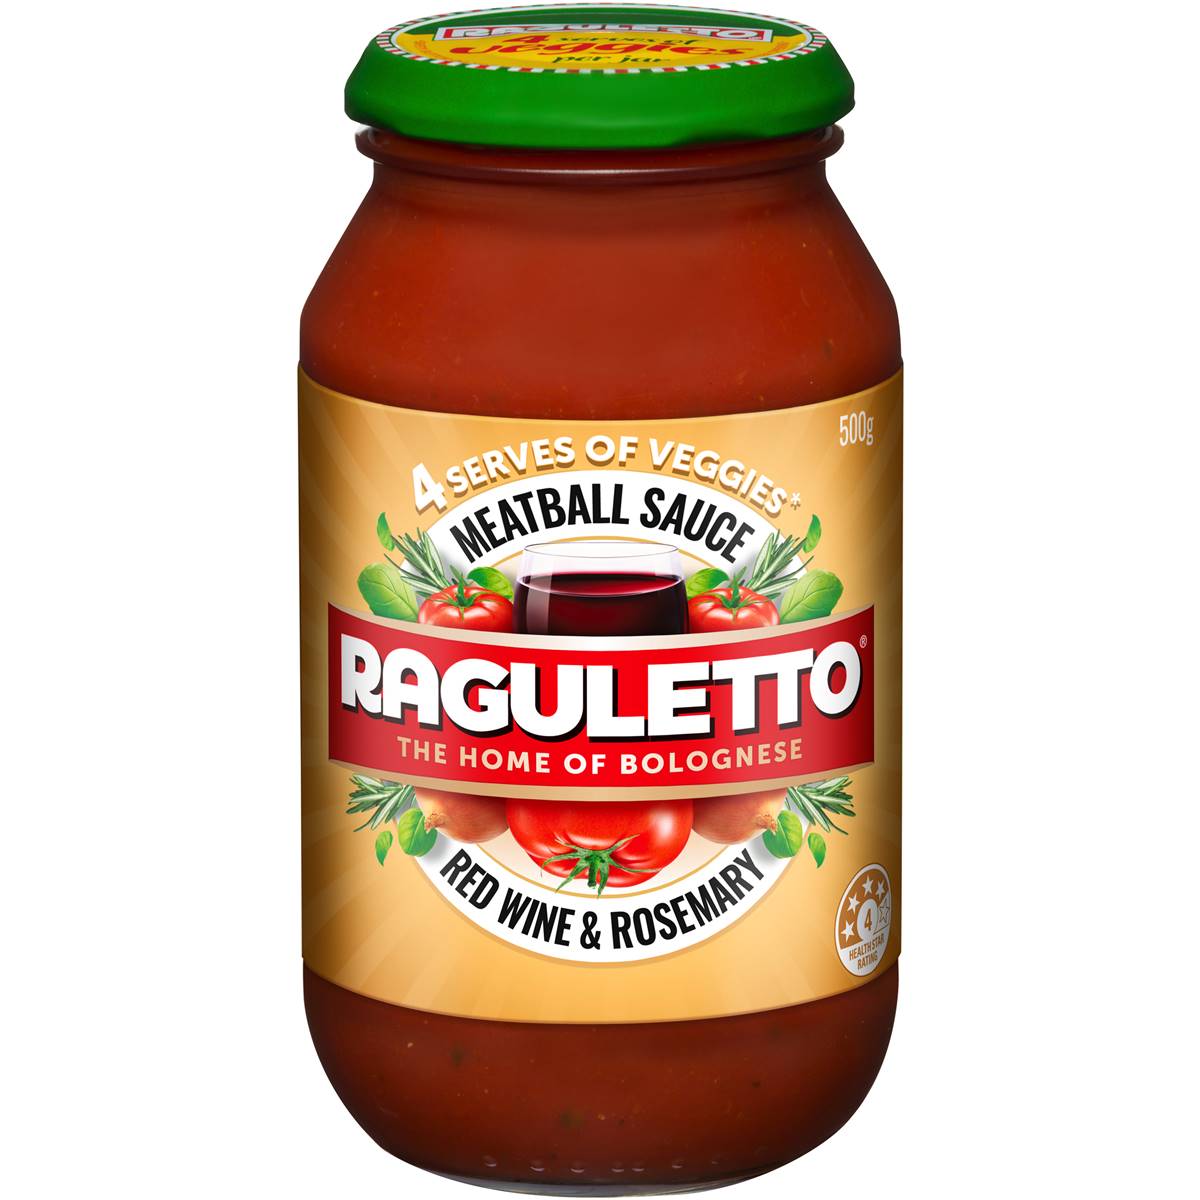 Raguletto Pasta Sauce Meatball